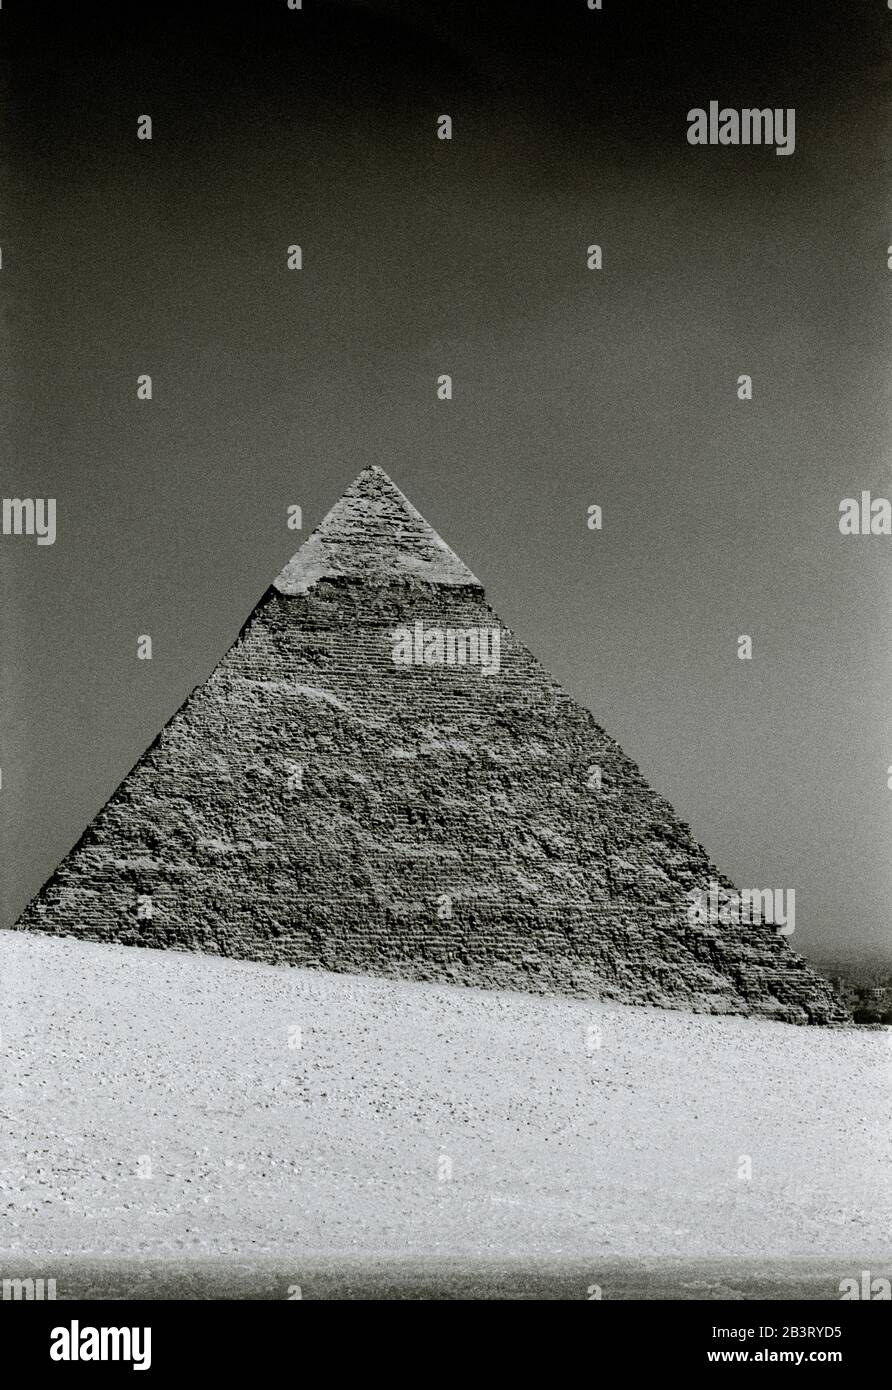 Reise-Fotografie - Pyramide von Khafre an den Pyramiden von Gizeh in Kairo in Ägypten in Nordafrika Mittlerer Osten - Alte Geschichte Stockfoto